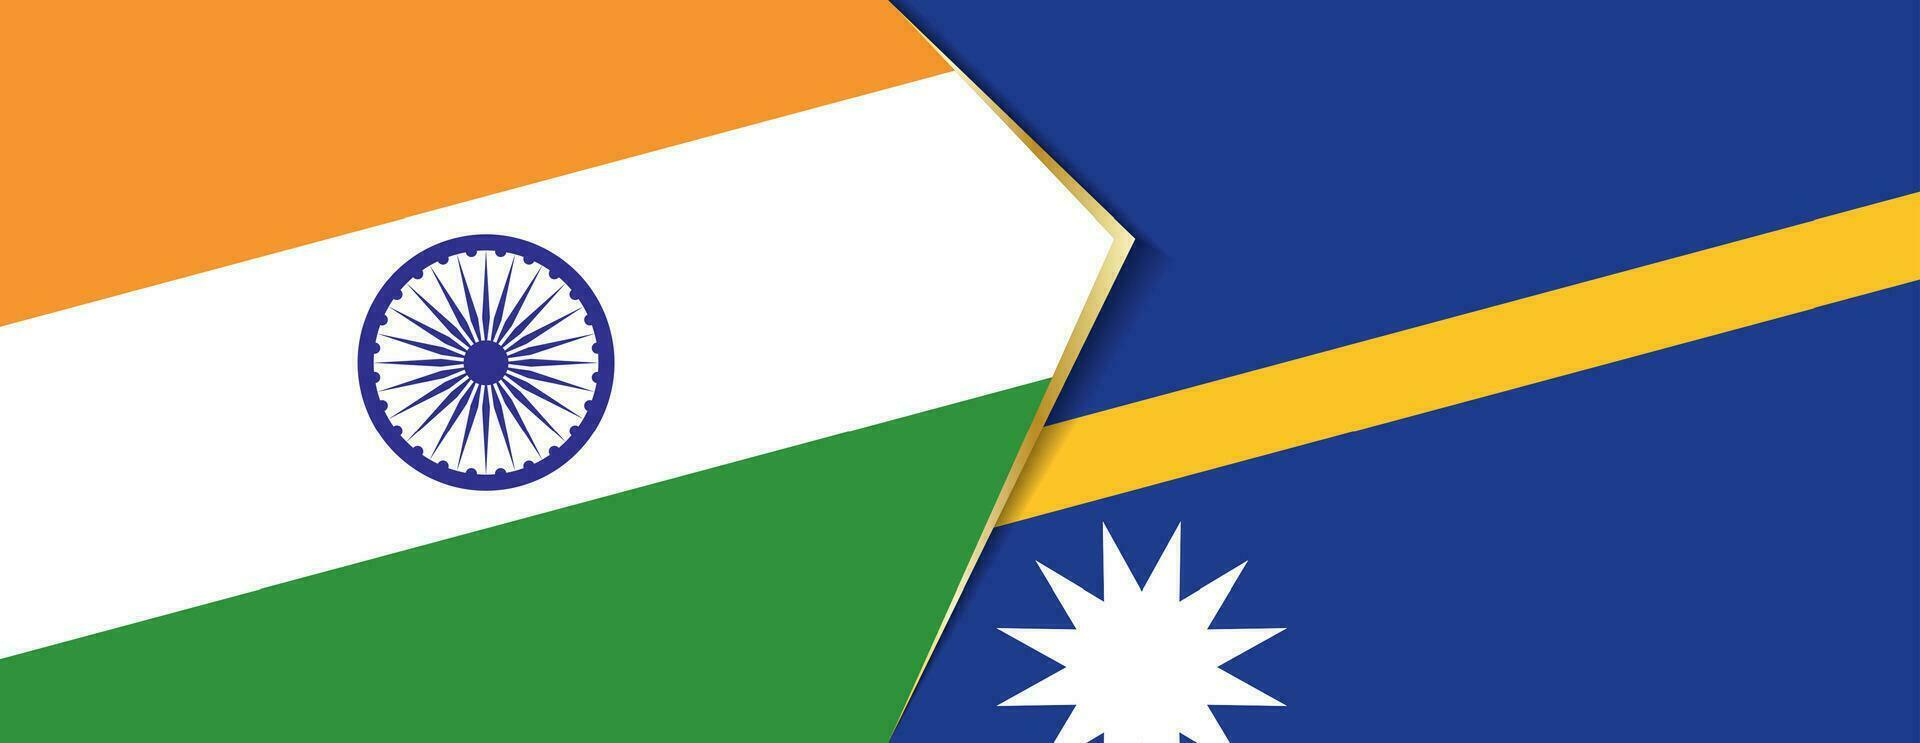 Indien und Nauru Flaggen, zwei Vektor Flaggen.